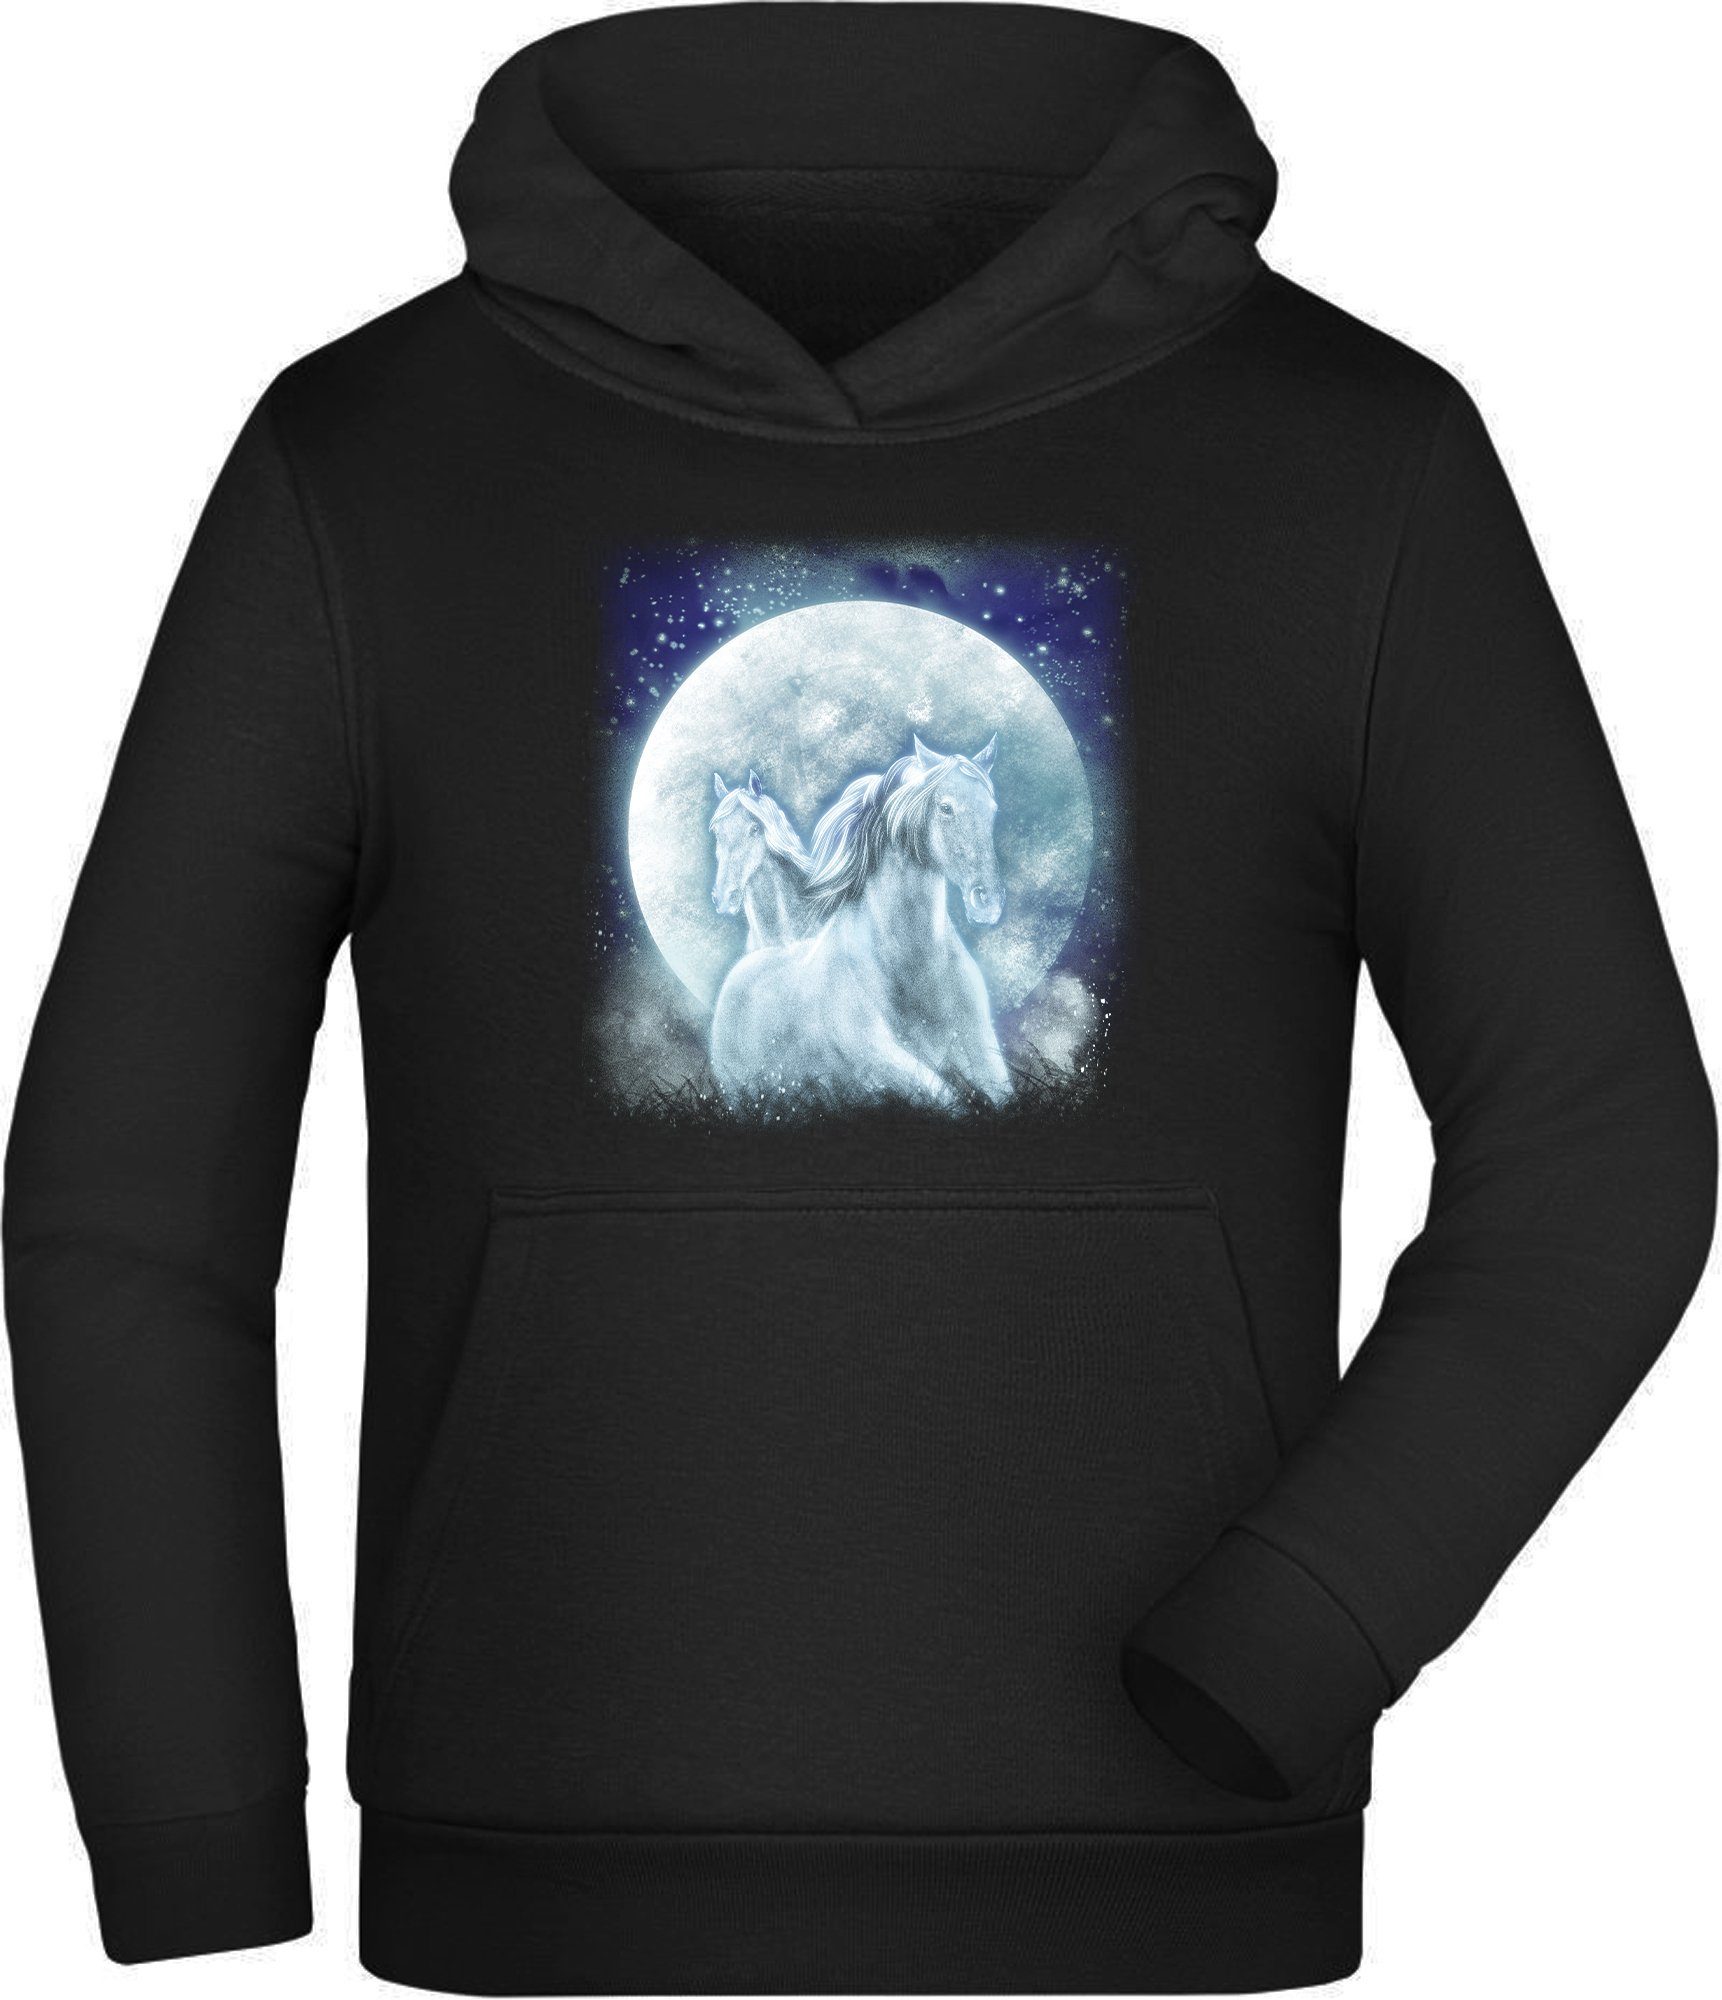 riesengroß MyDesign24 Hoodie i136 Kapuzen Aufdruck, mit Mond Hoodie Kinder Pferde Kapuzensweater - Sweatshirt Fantasy vor